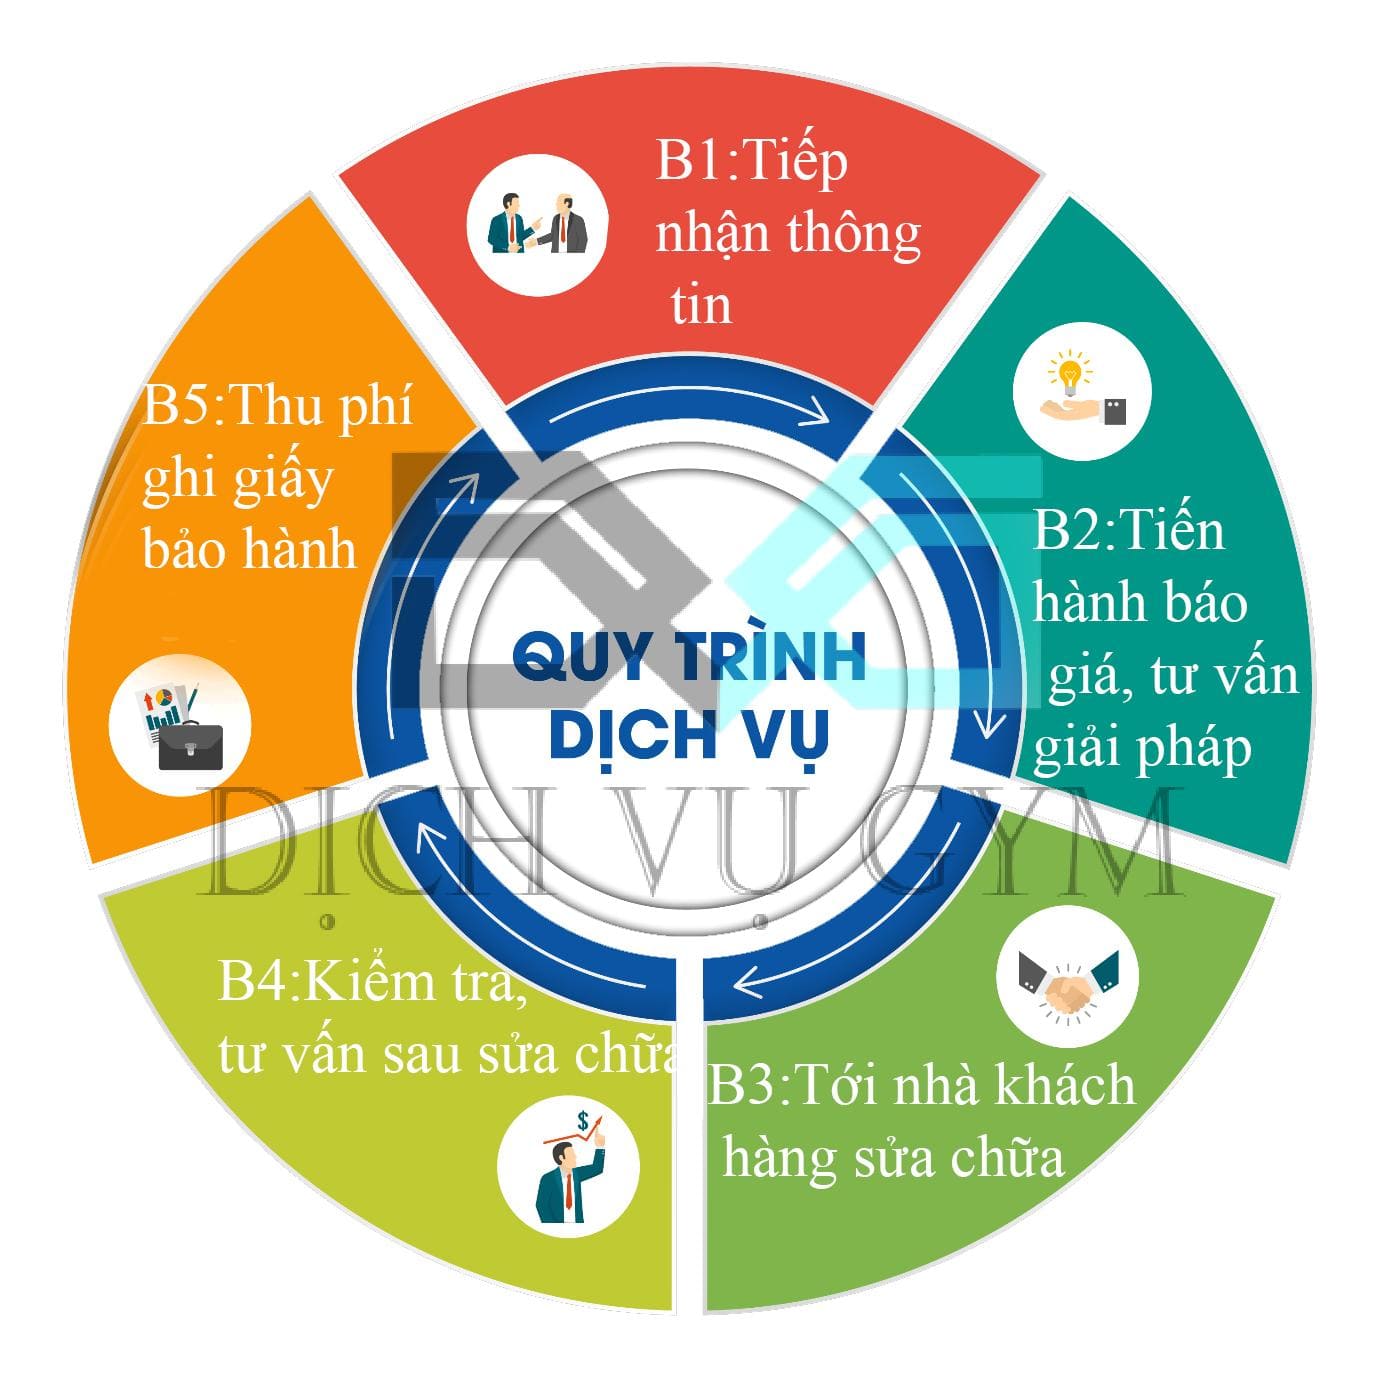 Dịch Vụ Gym Việt Nam